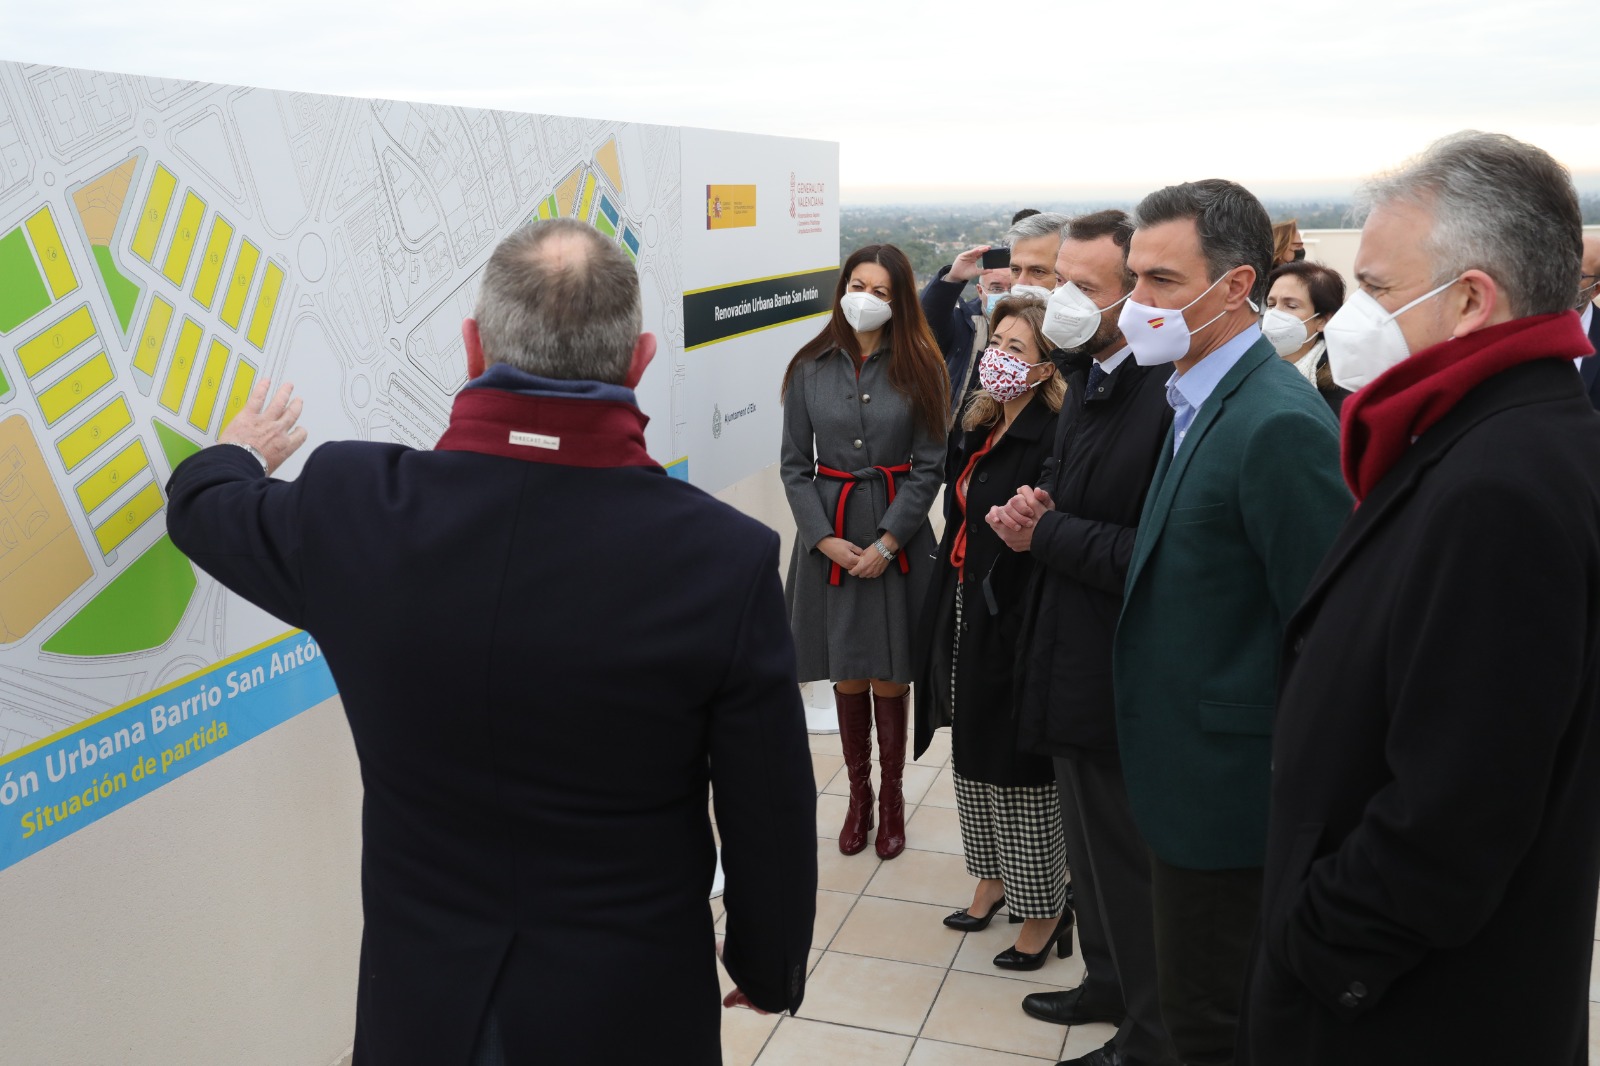 La Generalitat pone en valor la inversión de 22,7 millones de euros en vivienda pública en el barrio de San Antón de Elche